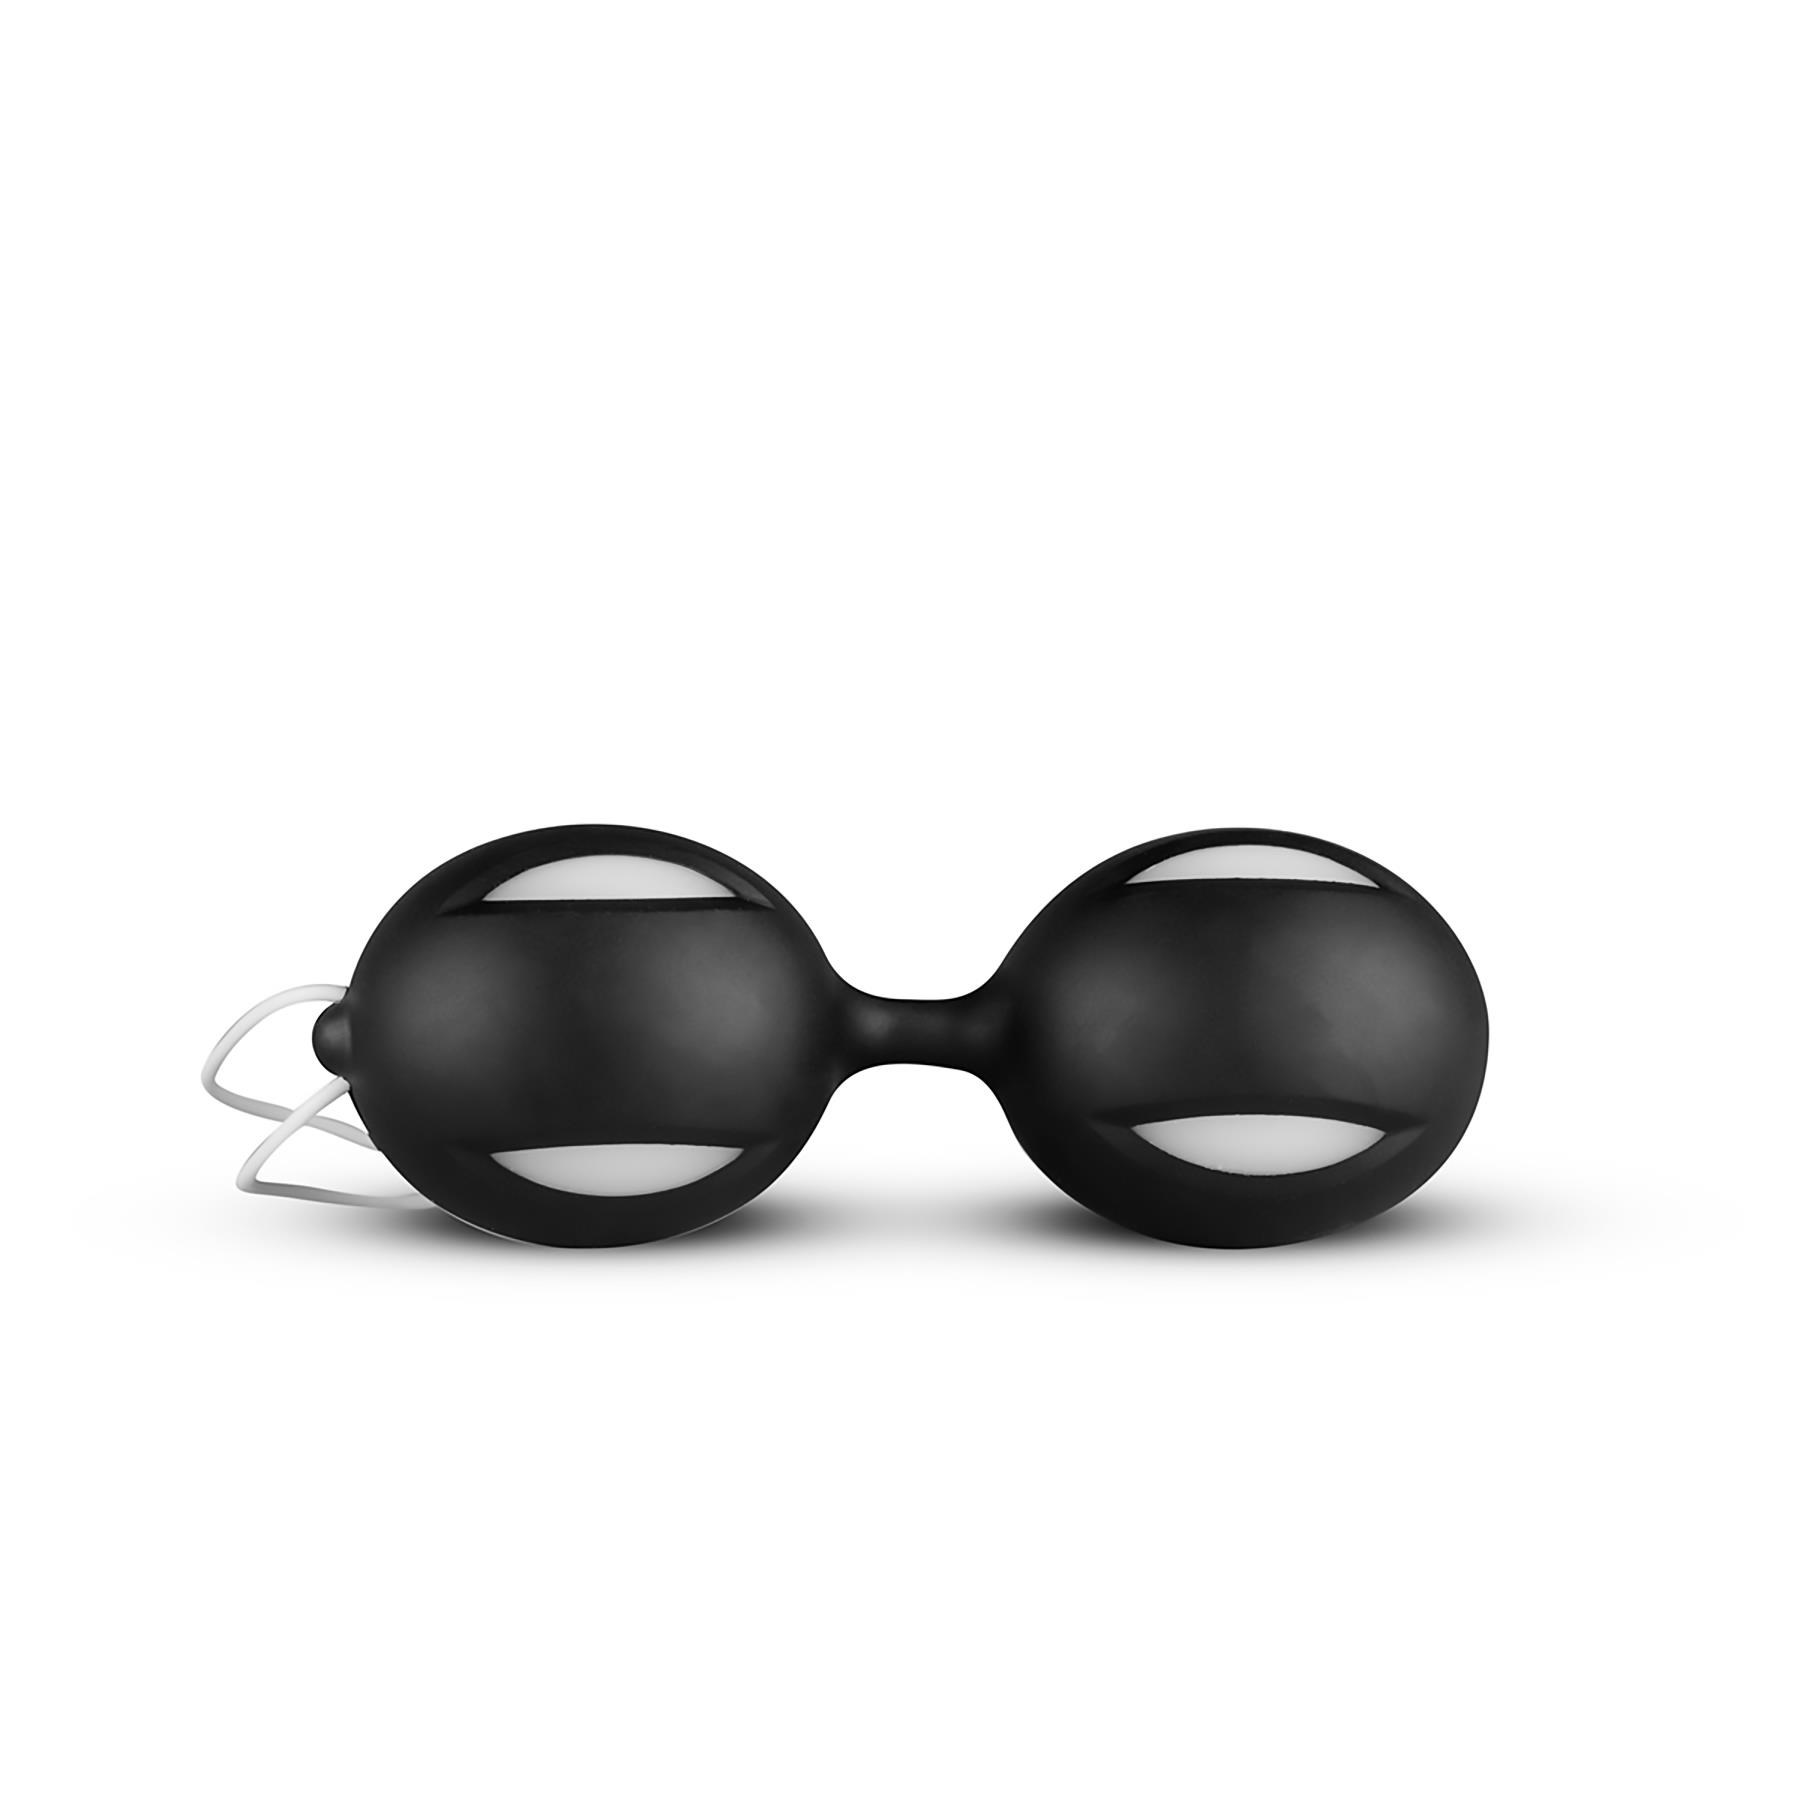 I Love Black Gift Set - Kegel Balls